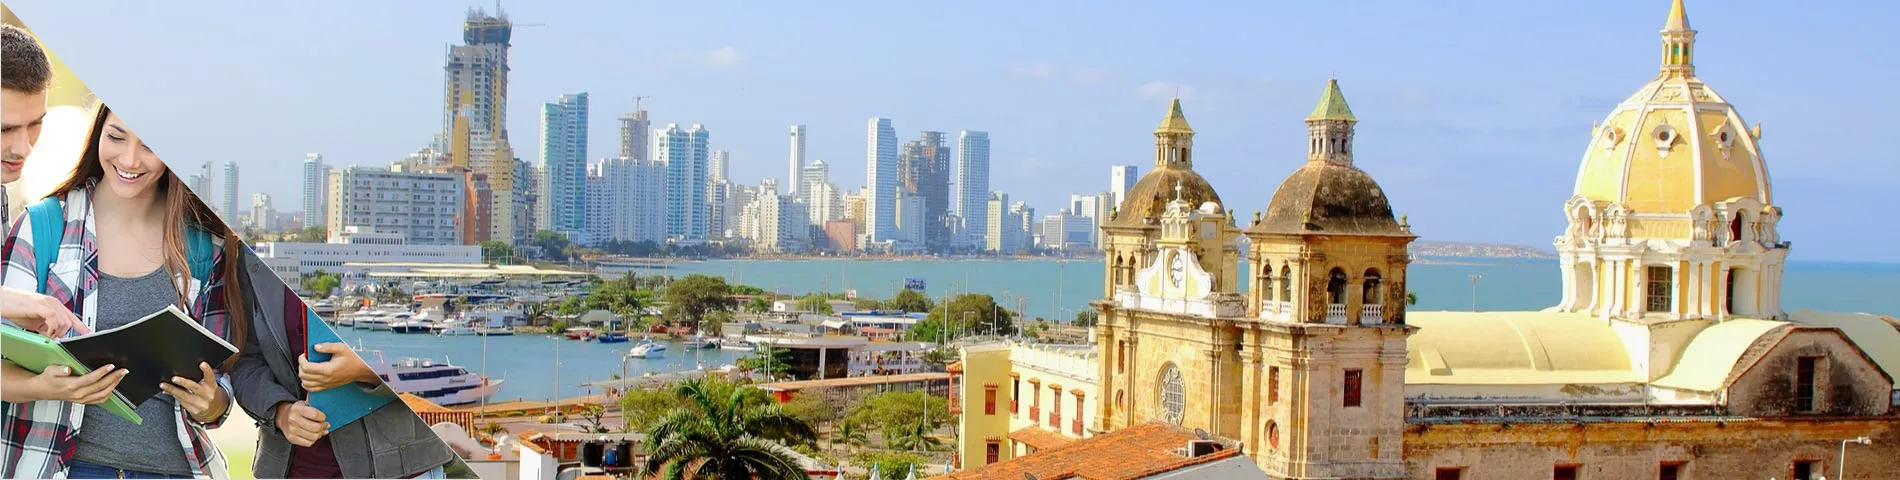 Cartagena - Podróżująca klasa